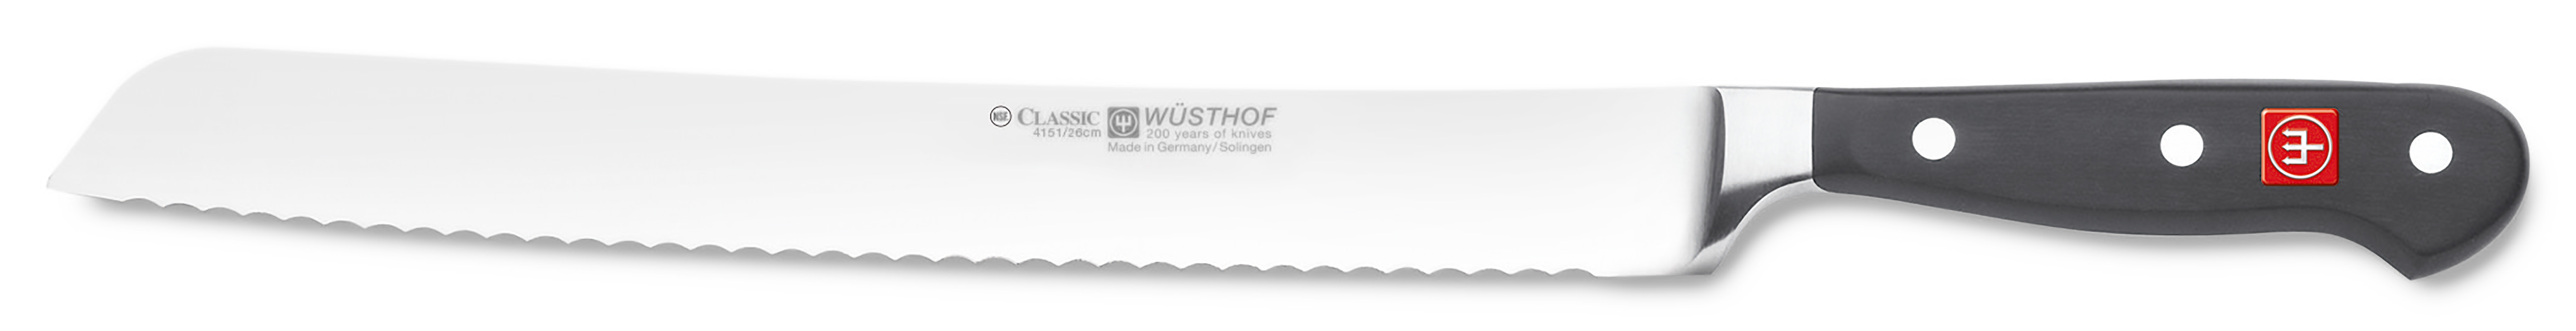 Wüsthof CLASSIC Brotmesser mit Wellenschliff 26cm